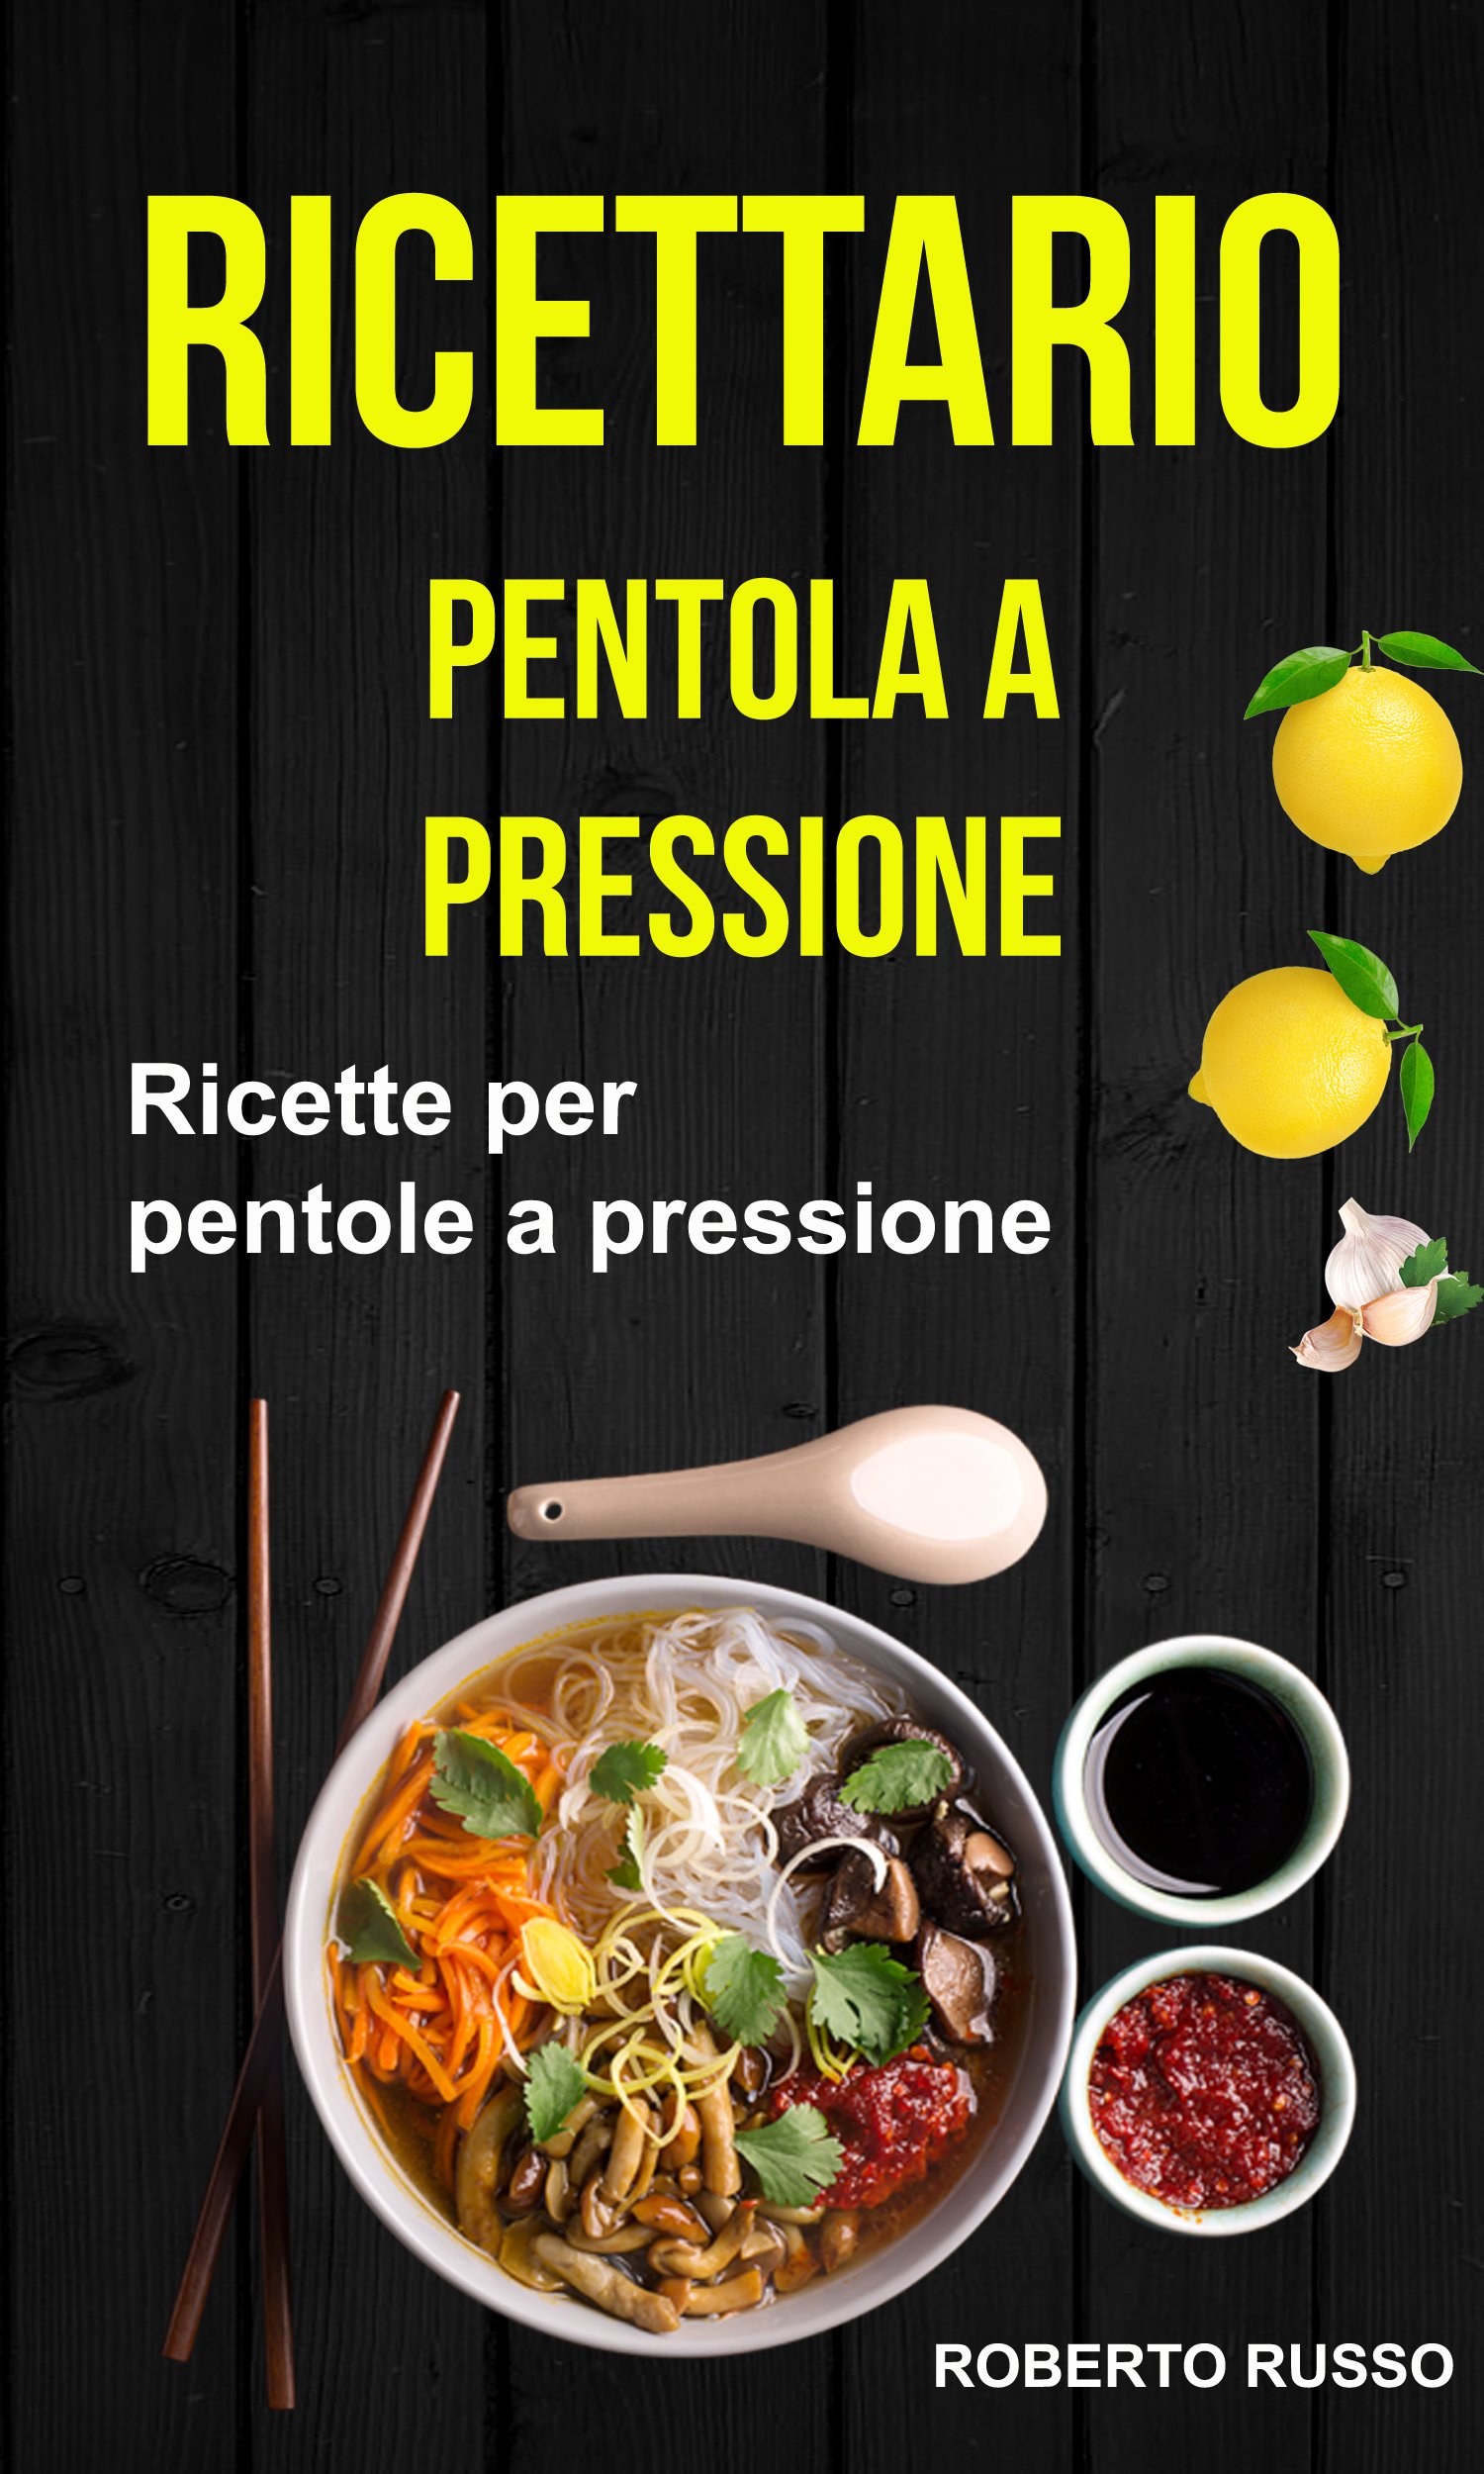 Ricettario: Ricette per pentole a pressione (Italian Edition)